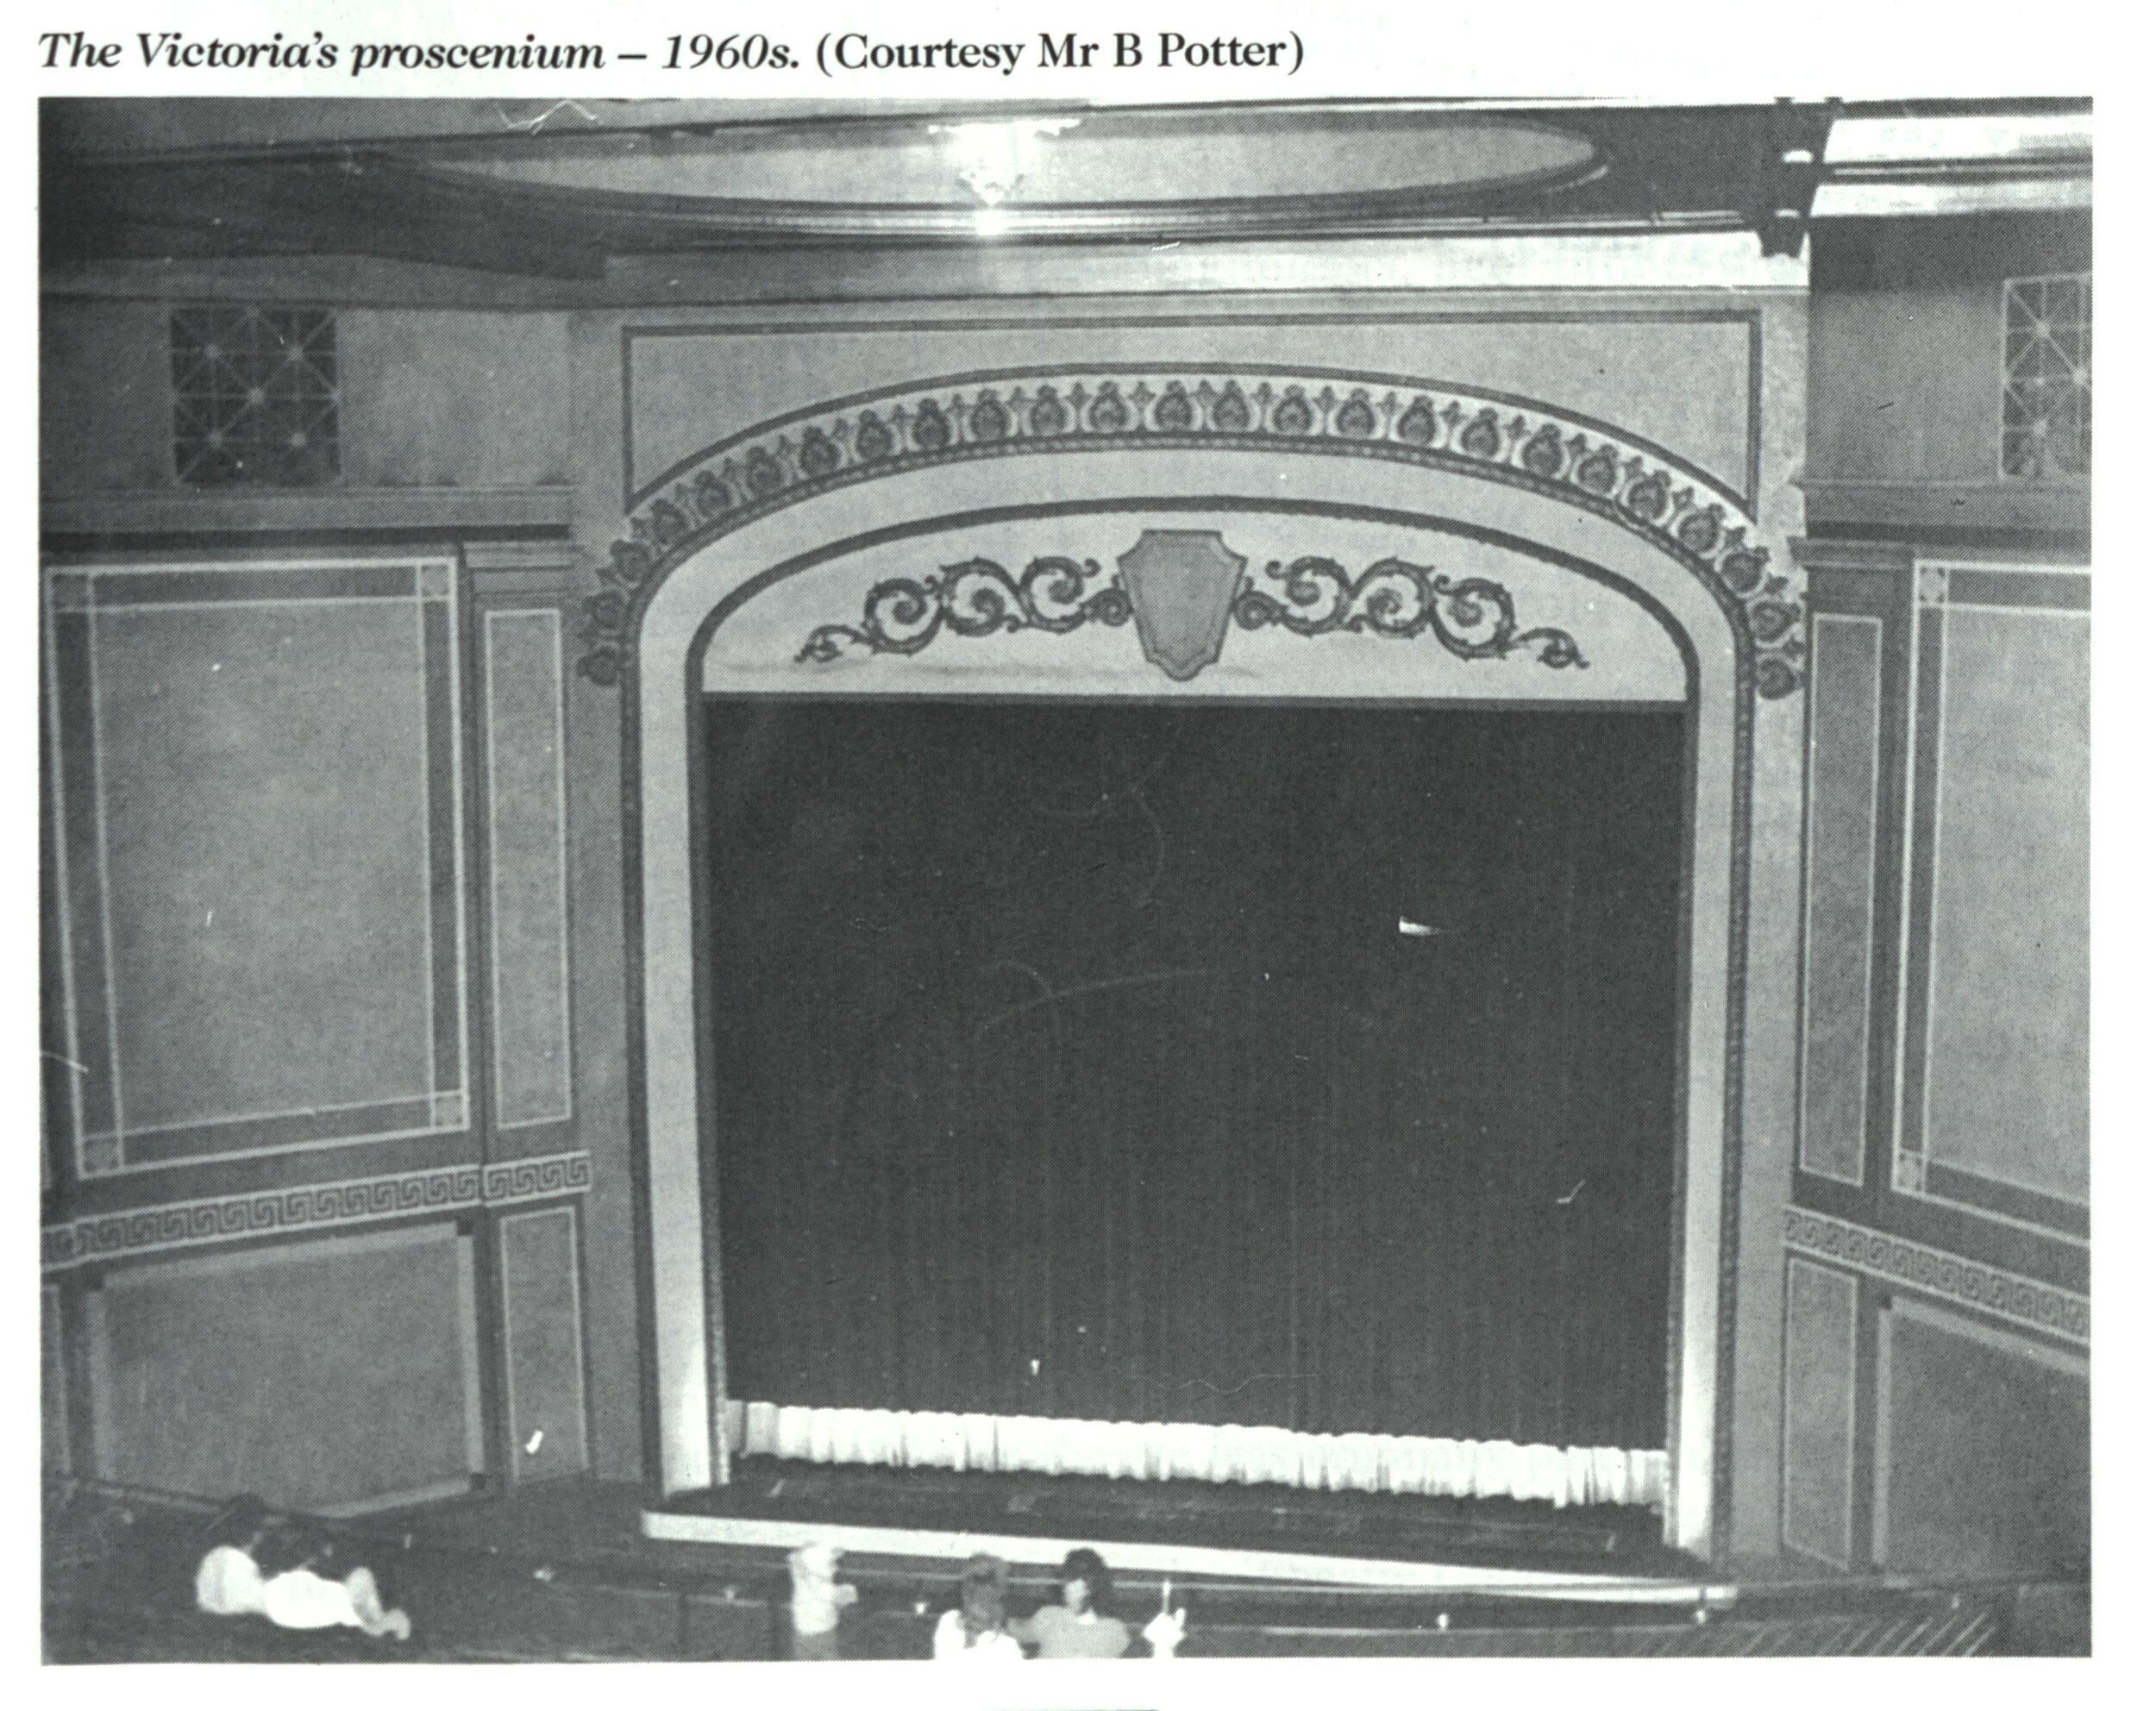 1960s-victoria-theatre-proscenium.jpg